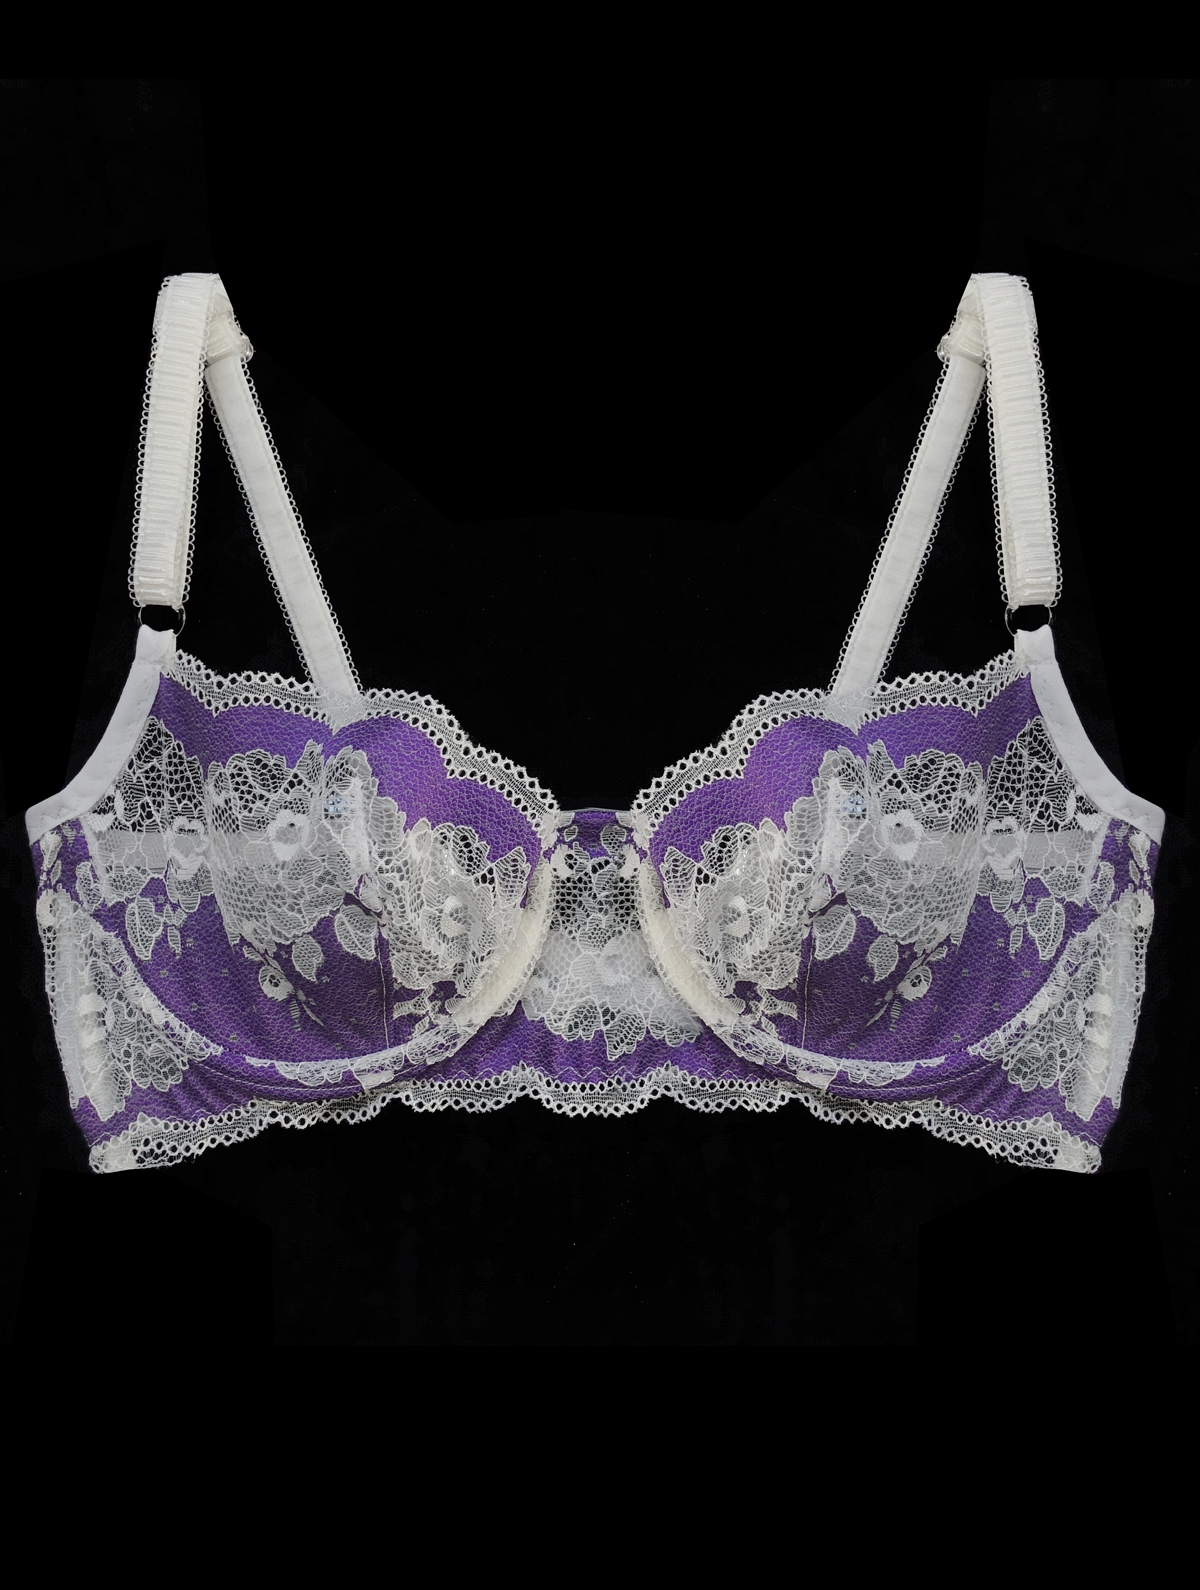 YOLANDA white and purple bra